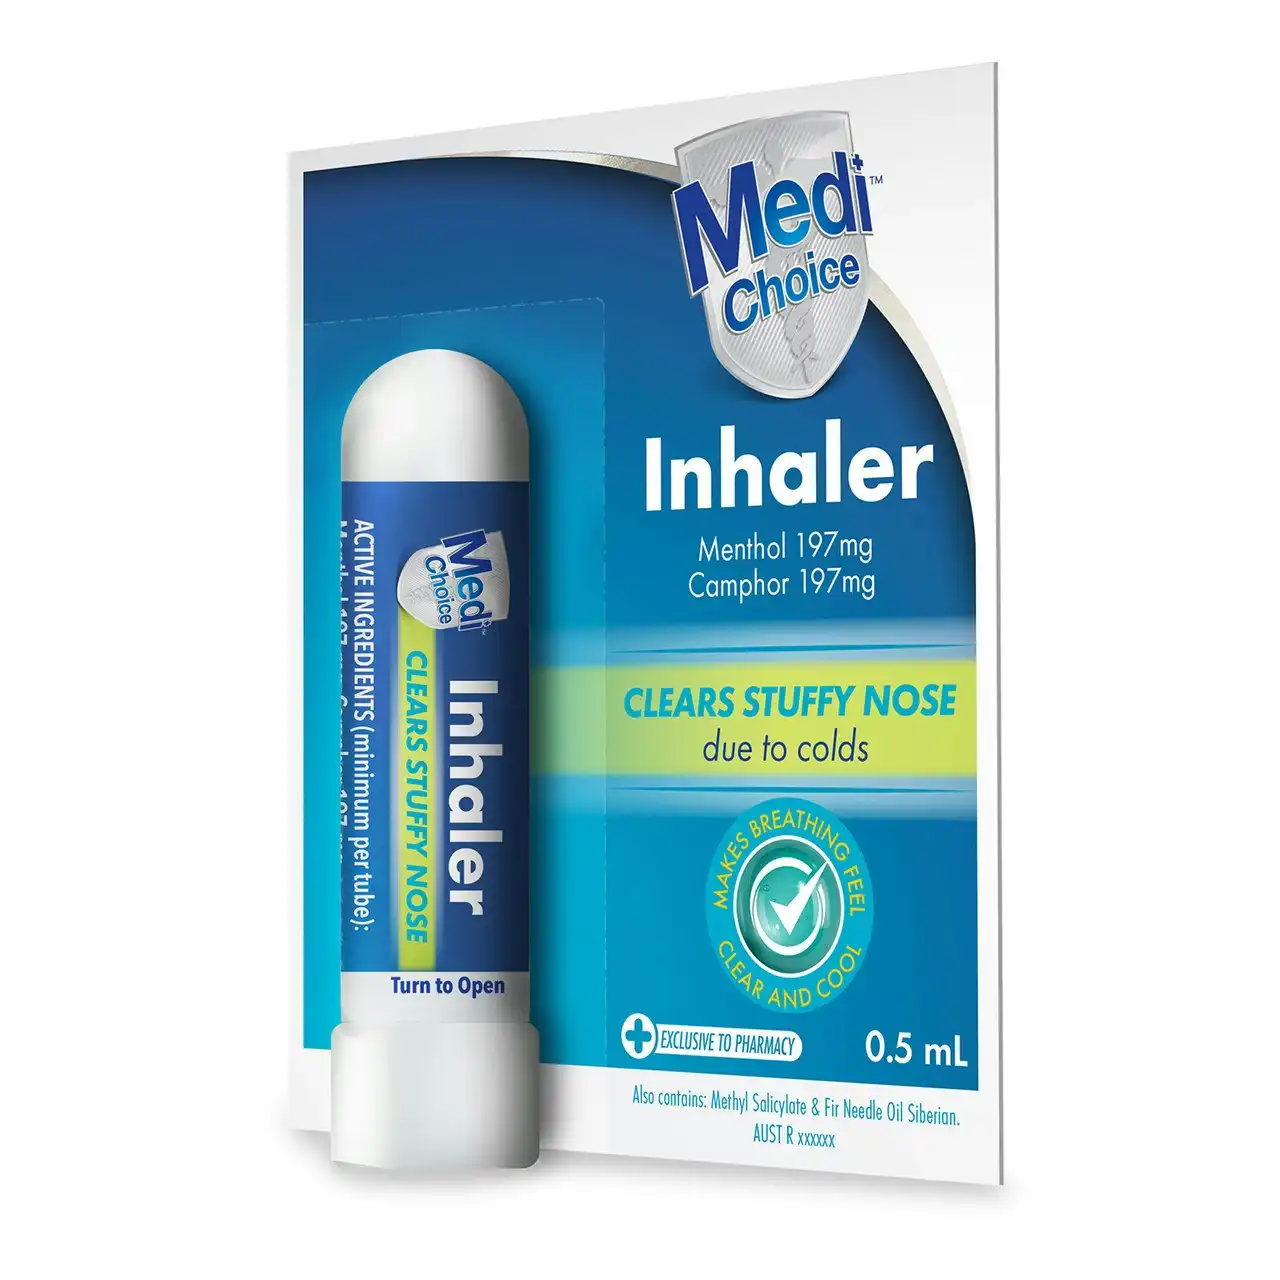 Medichoice Inhaler 0.5ml